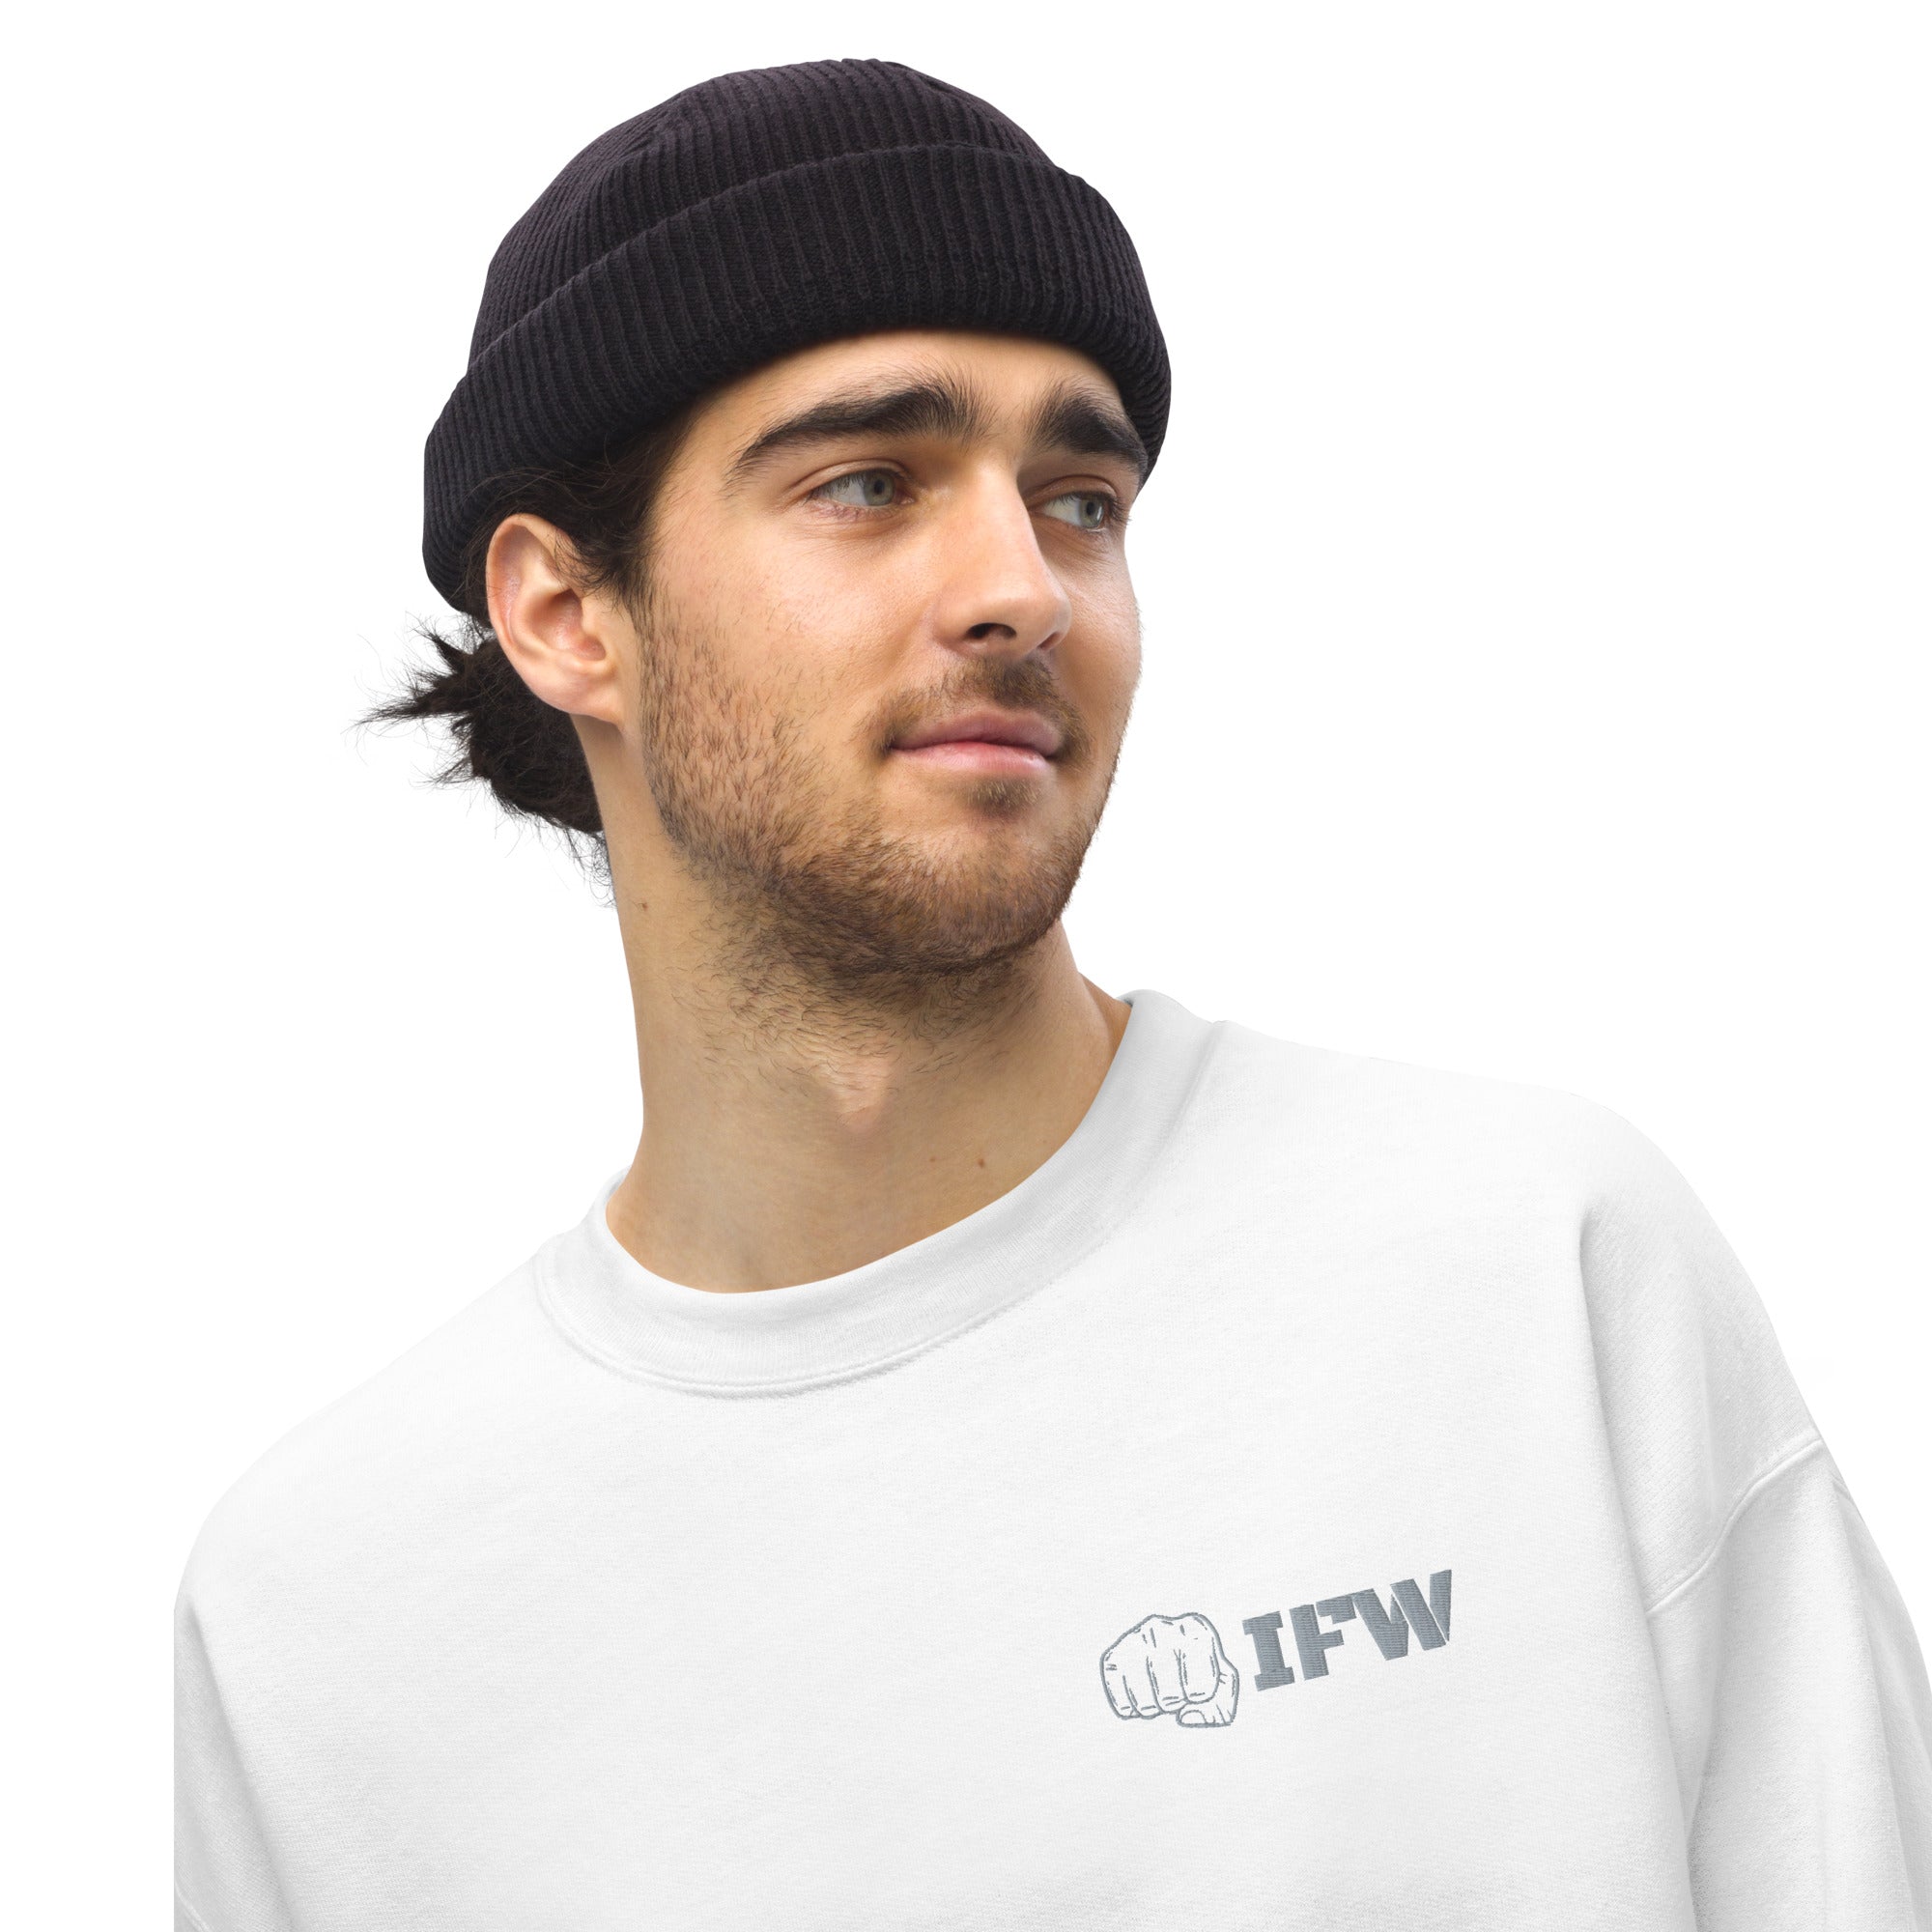 IFW Crewneck Sweatshirt